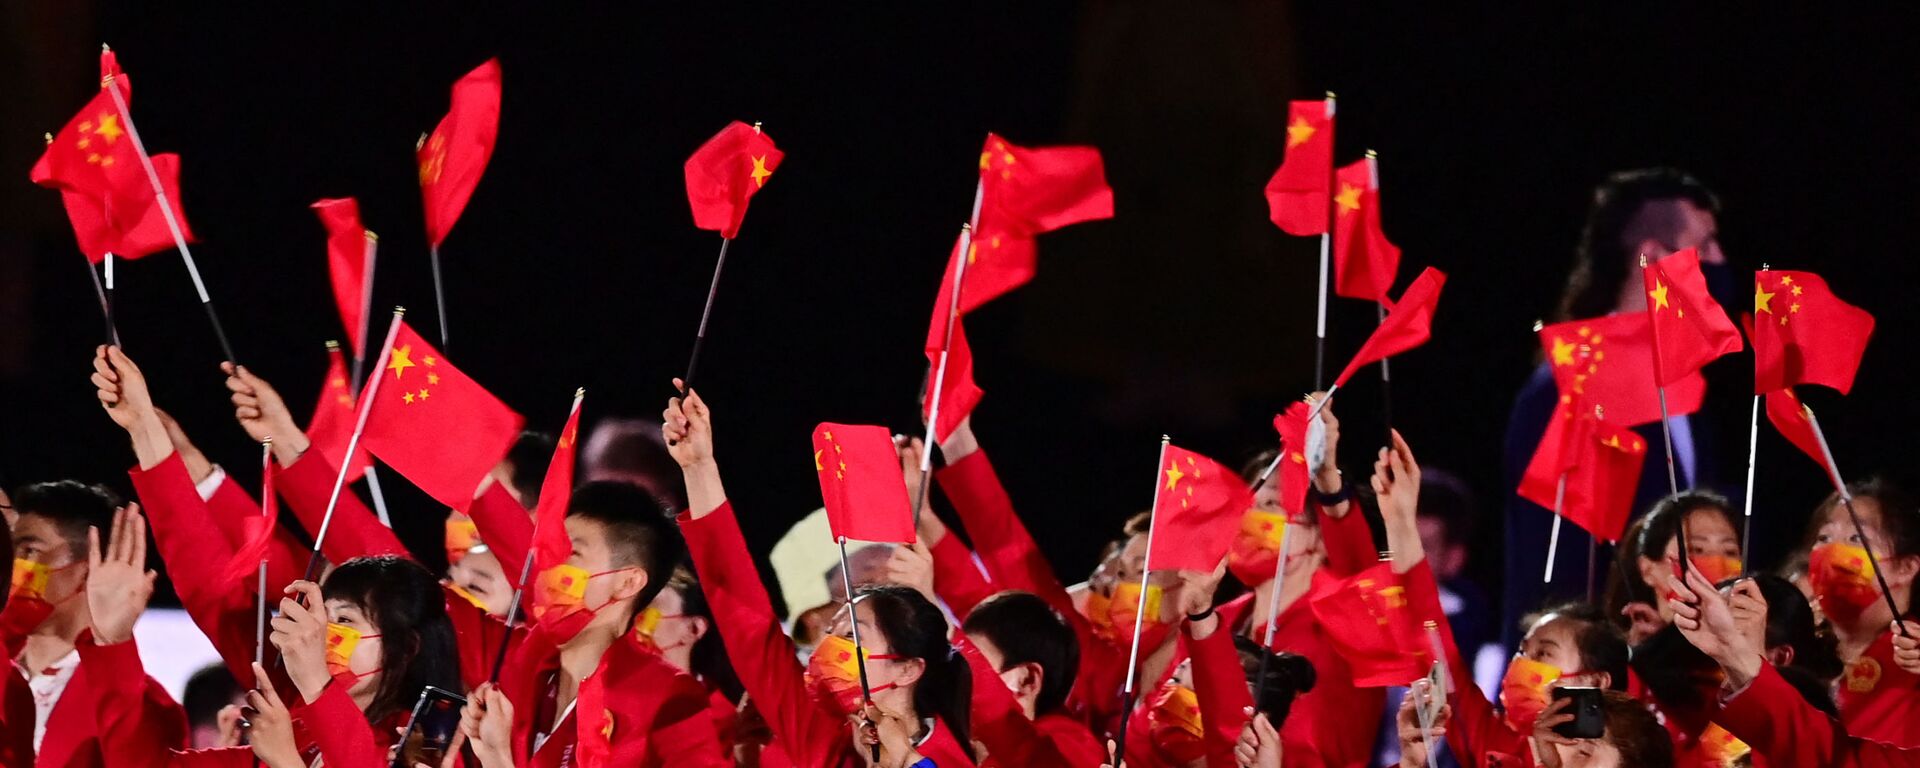 Члены китайской делегации машут флагами, входя на Олимпийский стадион во время церемонии открытия в Токио - Sputnik Таджикистан, 1920, 05.09.2021